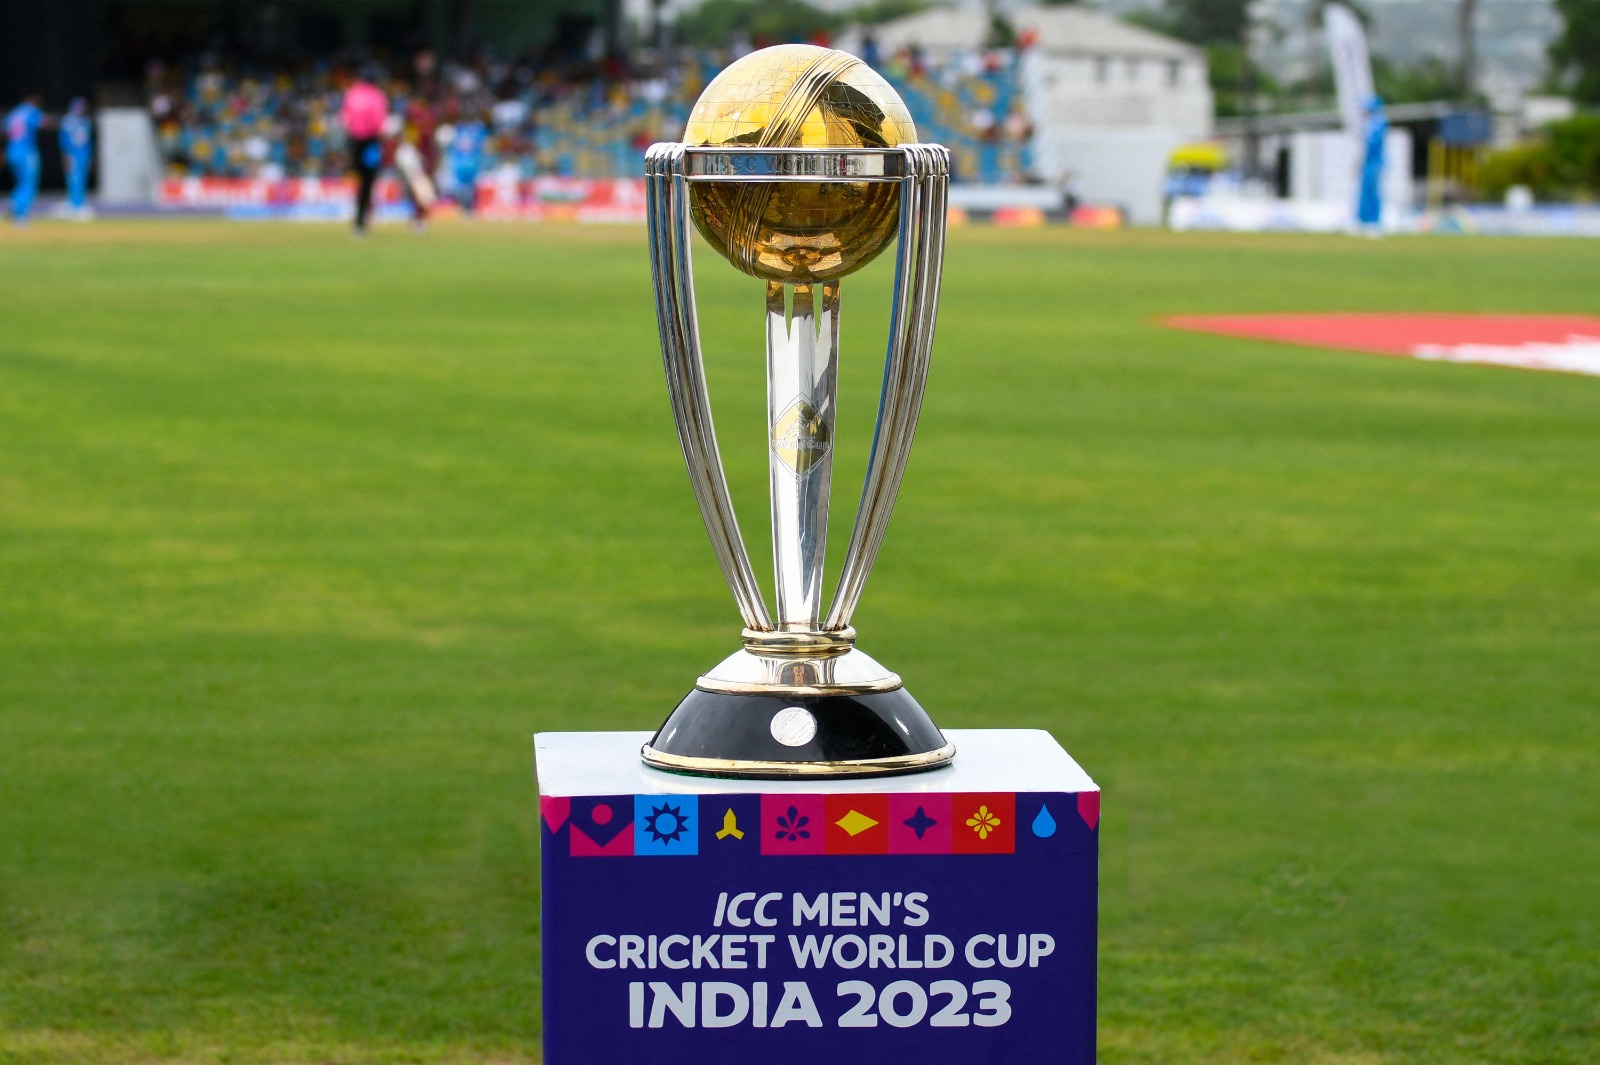 World Cup 2023 : சென்னையில் பறக்கும் ரயில் வழித்தடத்தில் சிறப்பு ரயில்கள் இயக்கப்படும் என அறிவிப்பு.!!